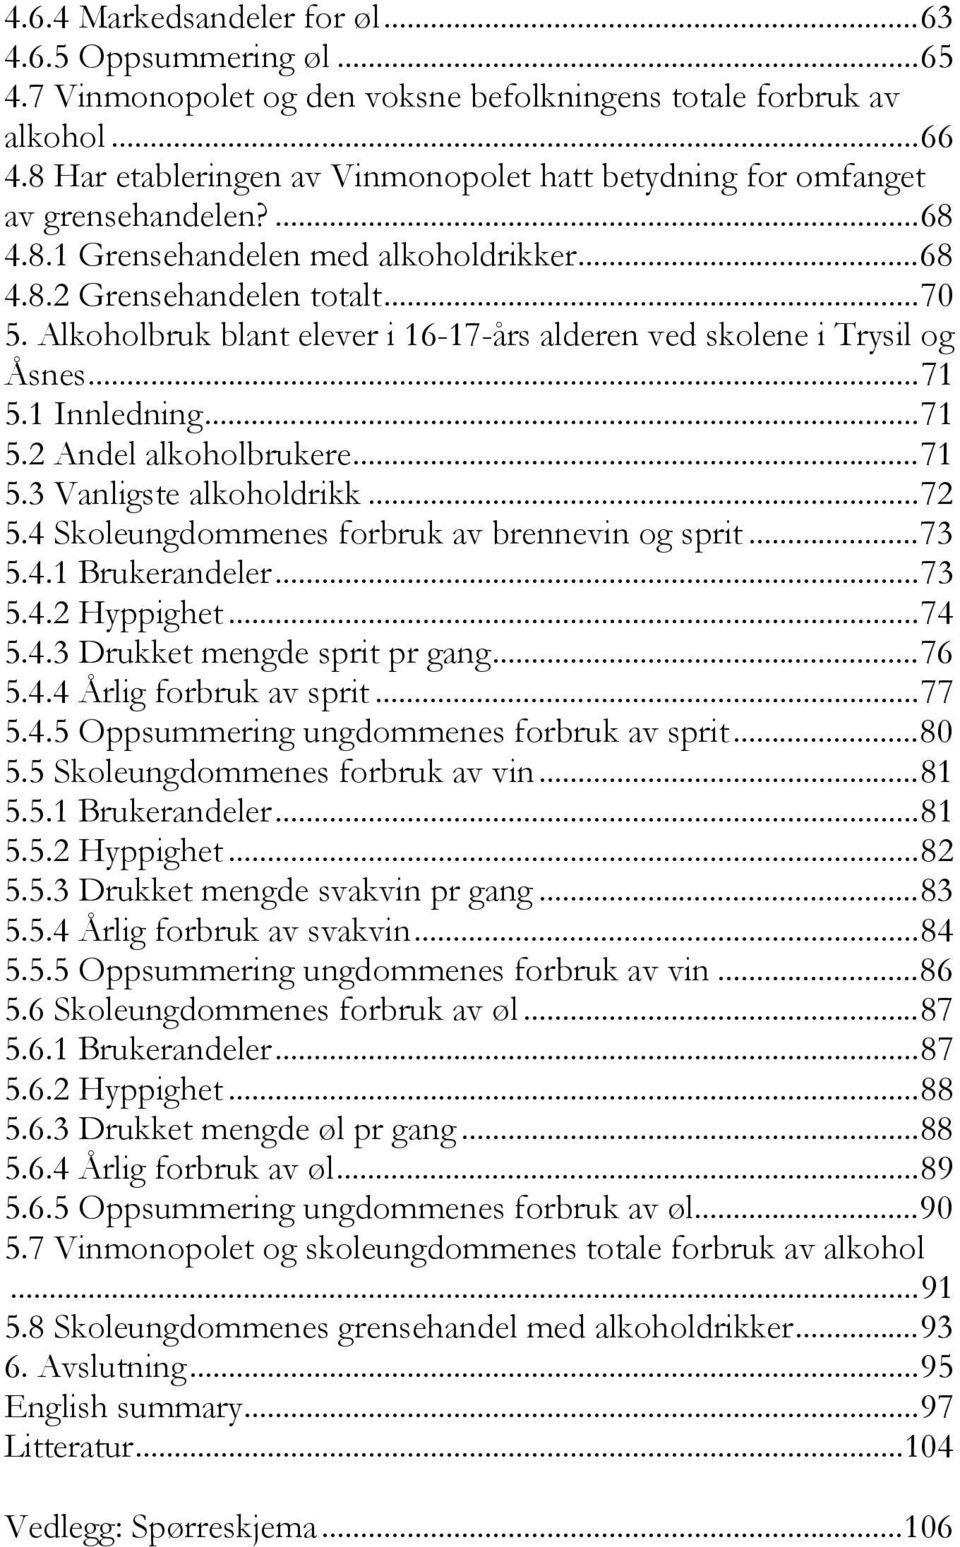 Alkoholbruk blant elever i 16-17-års alderen ved skolene i Trysil og Åsnes...71 5.1 Innledning...71 5.2 Andel alkoholbrukere...71 5.3 Vanligste alkoholdrikk...72 5.